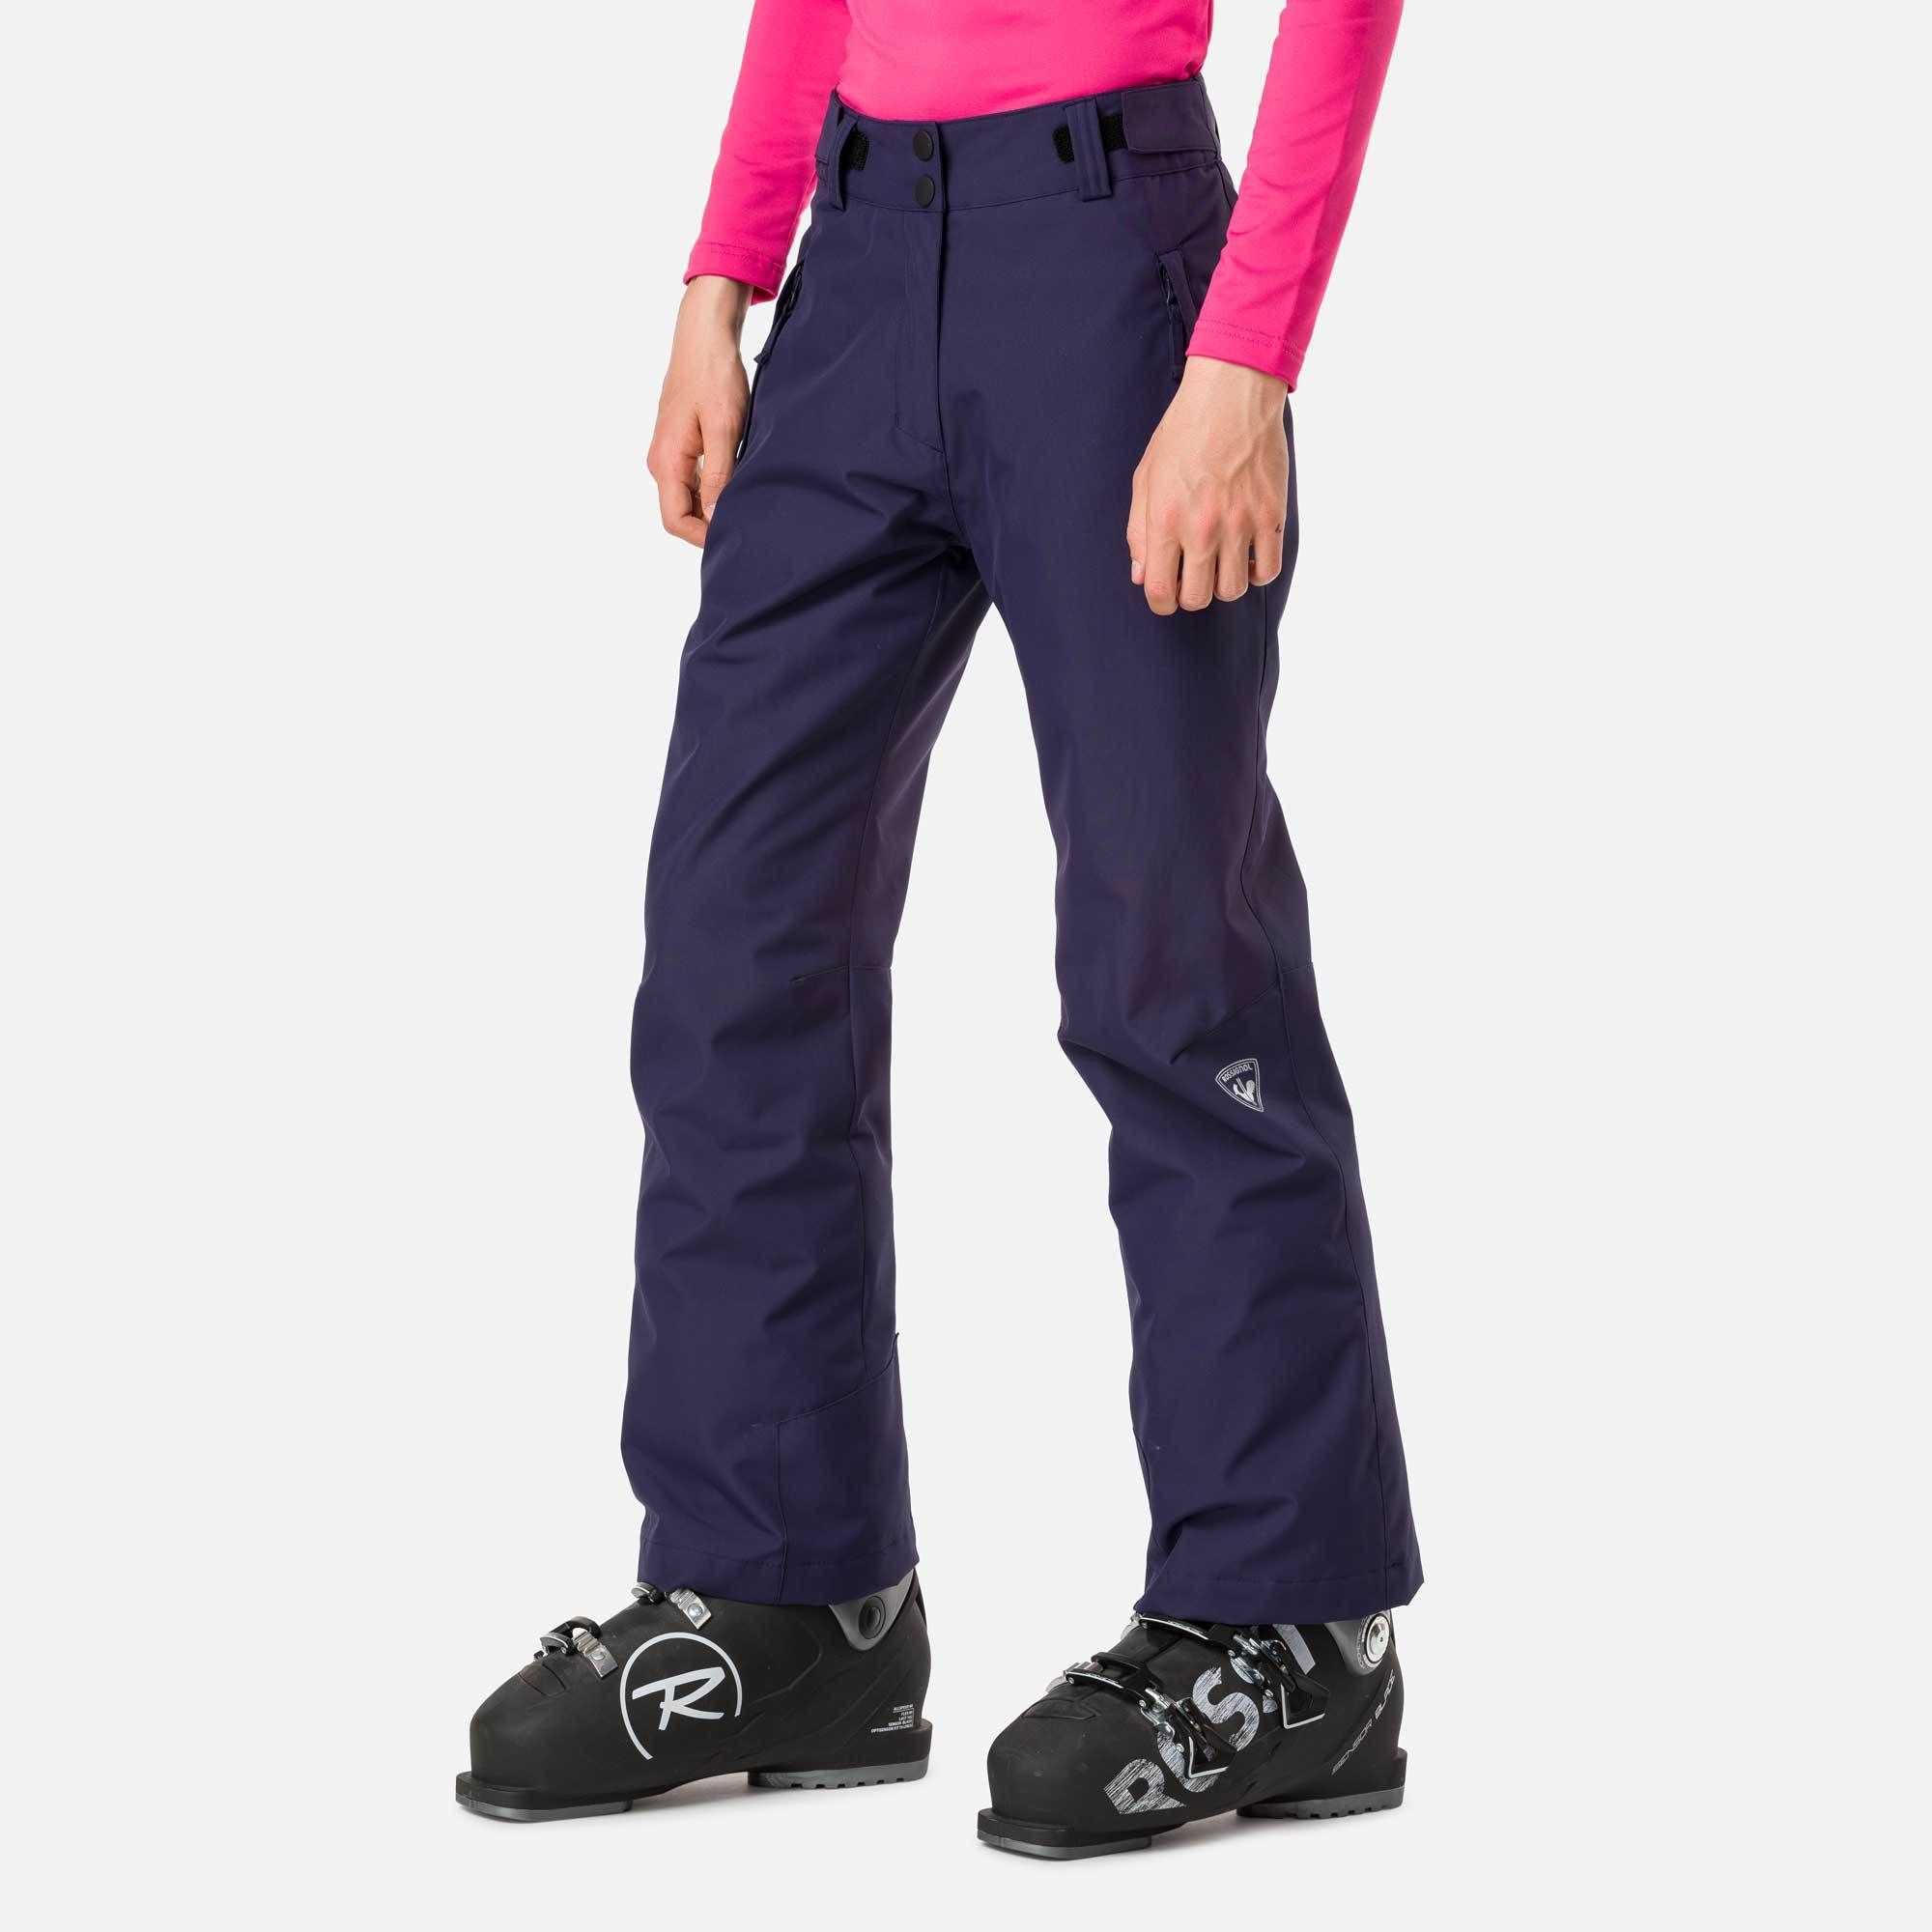 Girls’ ski trousers